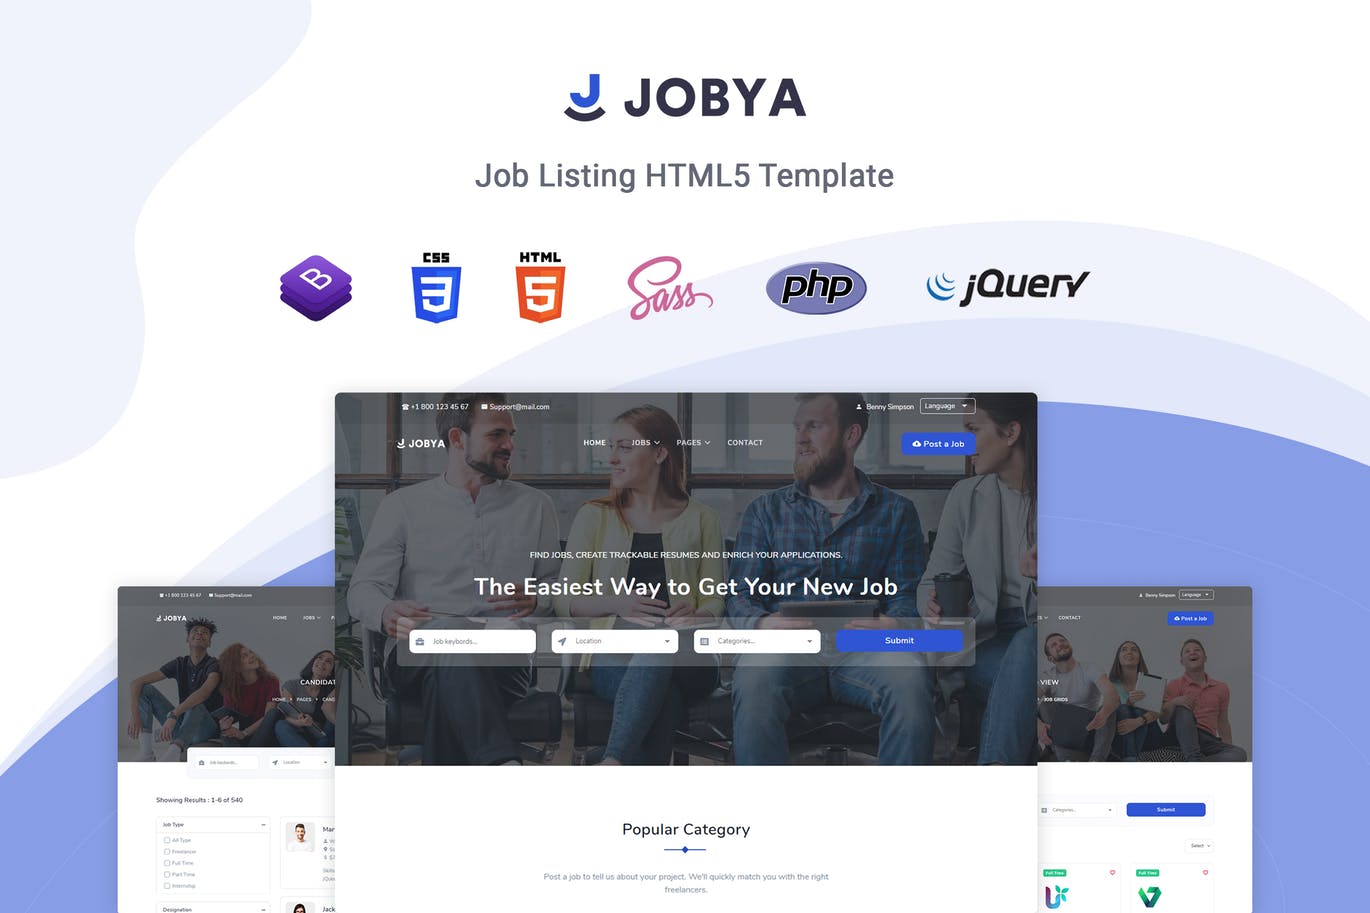 招聘网站/猎头网站设计HTML5模板第一素材精选 Jobya – Job Listing HTML5 Template插图